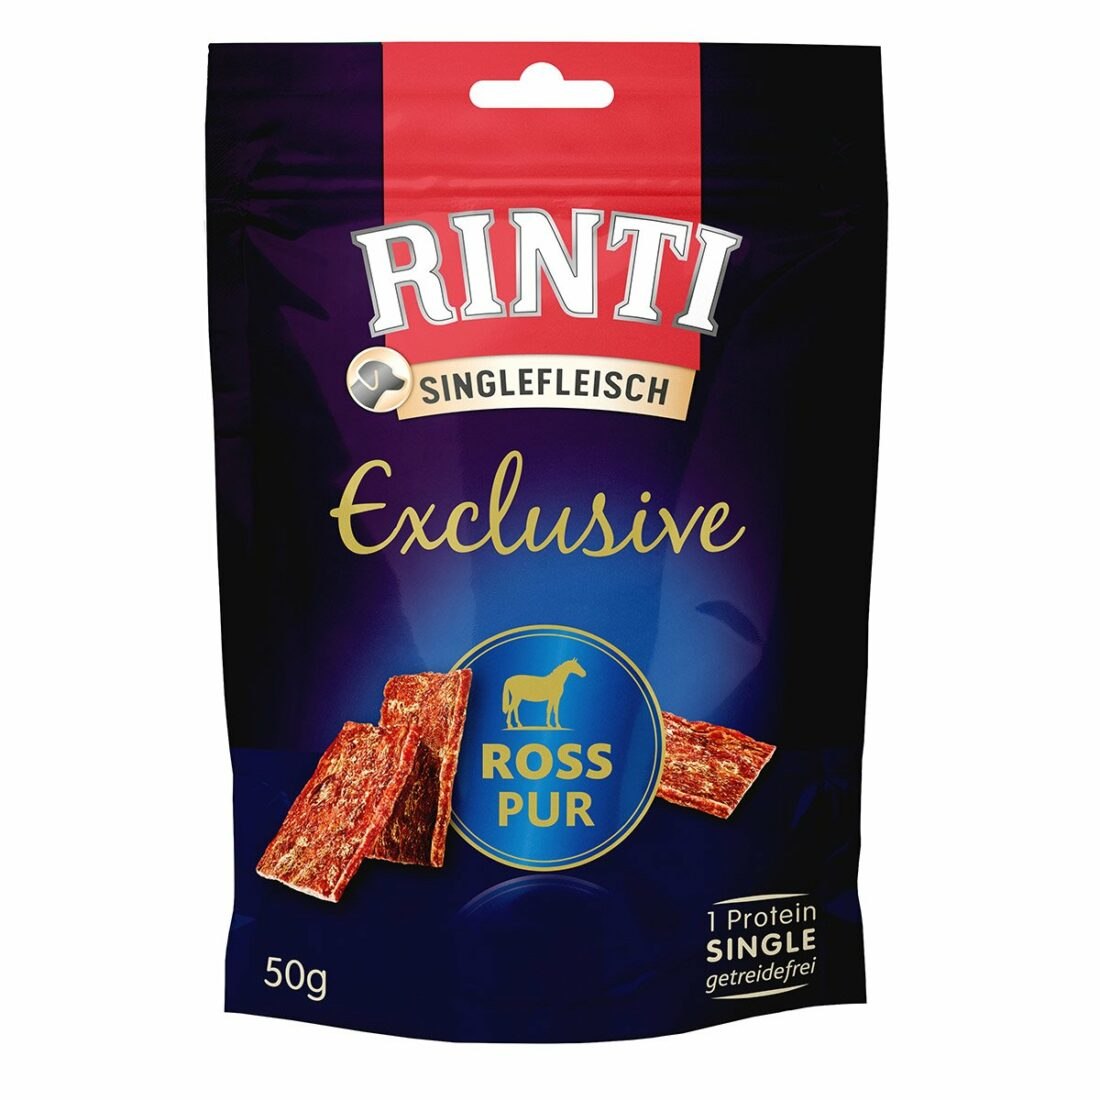 Rinti Singlefleisch Exclusive Snack